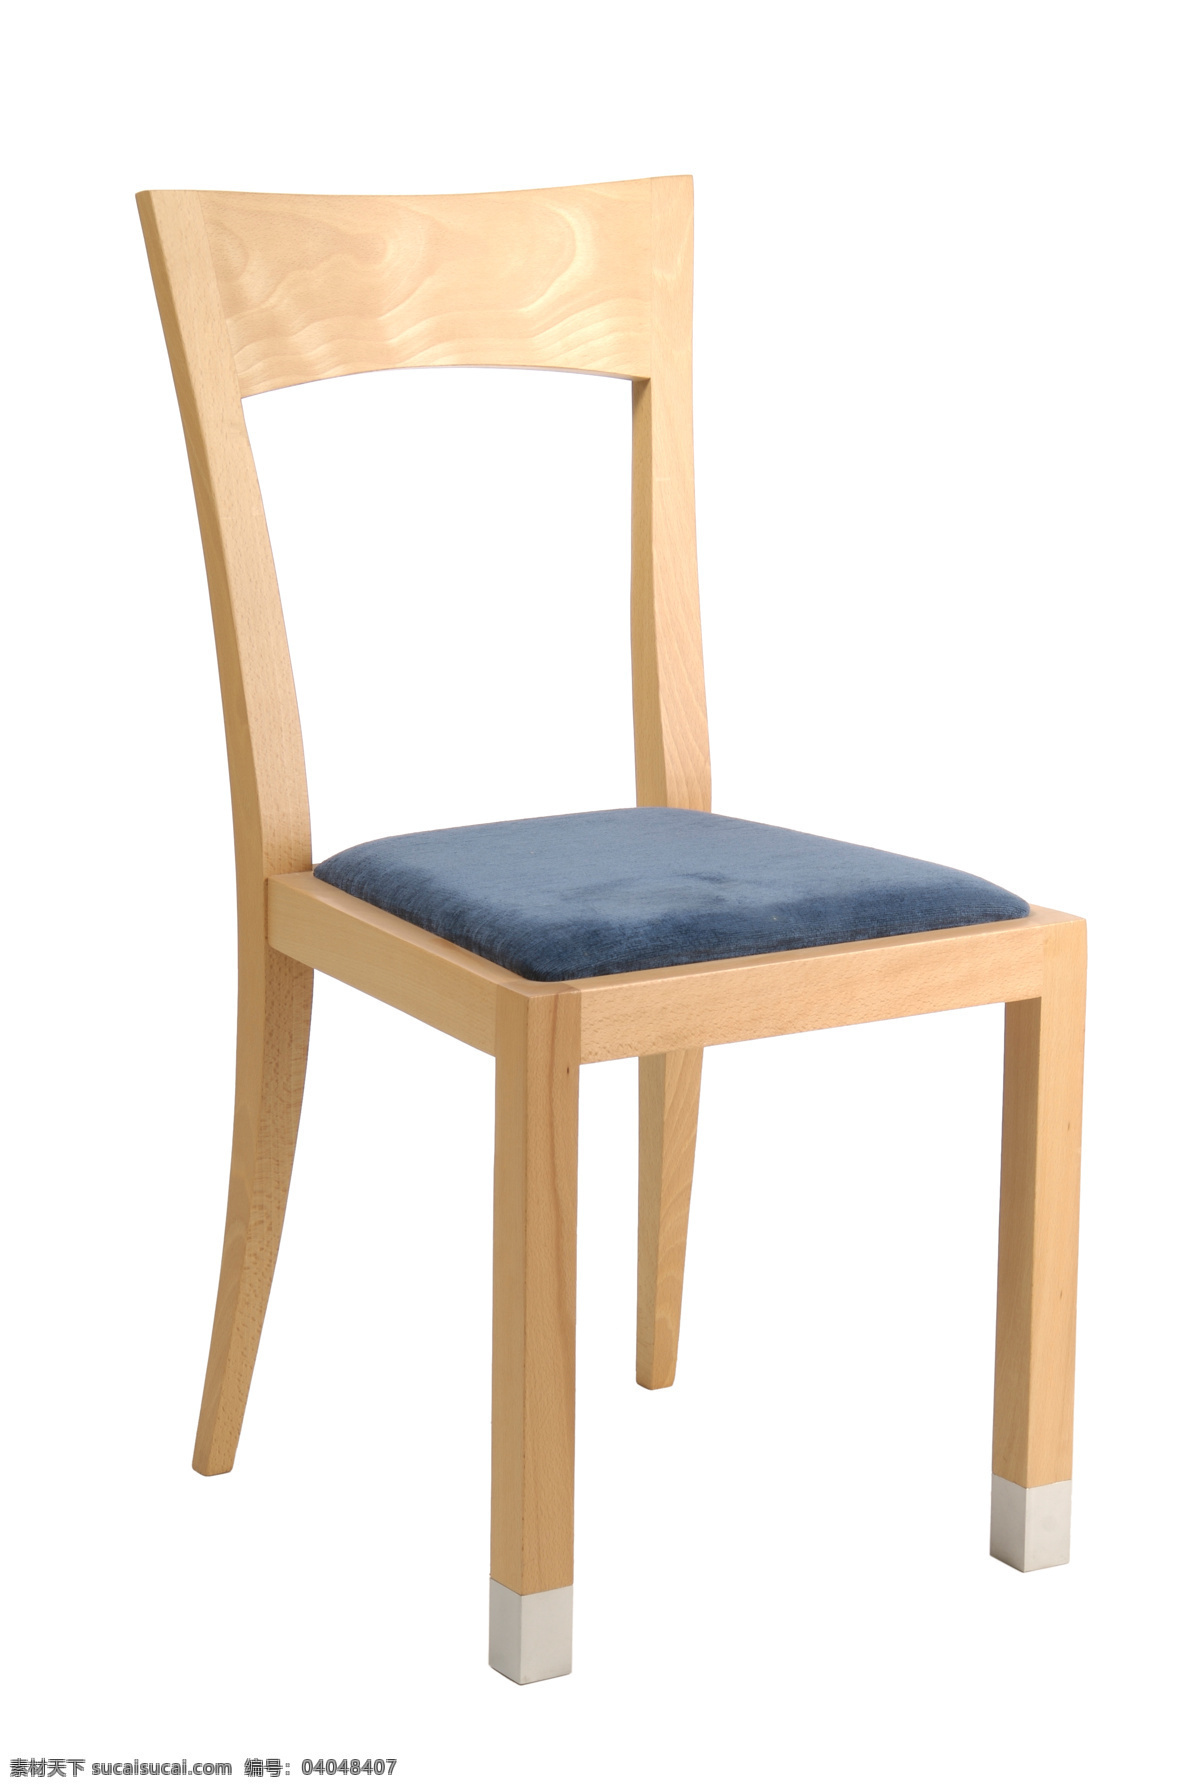 木 凳子 木椅子 椅子 家具 木制家具 靠背椅 沙发椅子 垫子 家具电器 生活百科